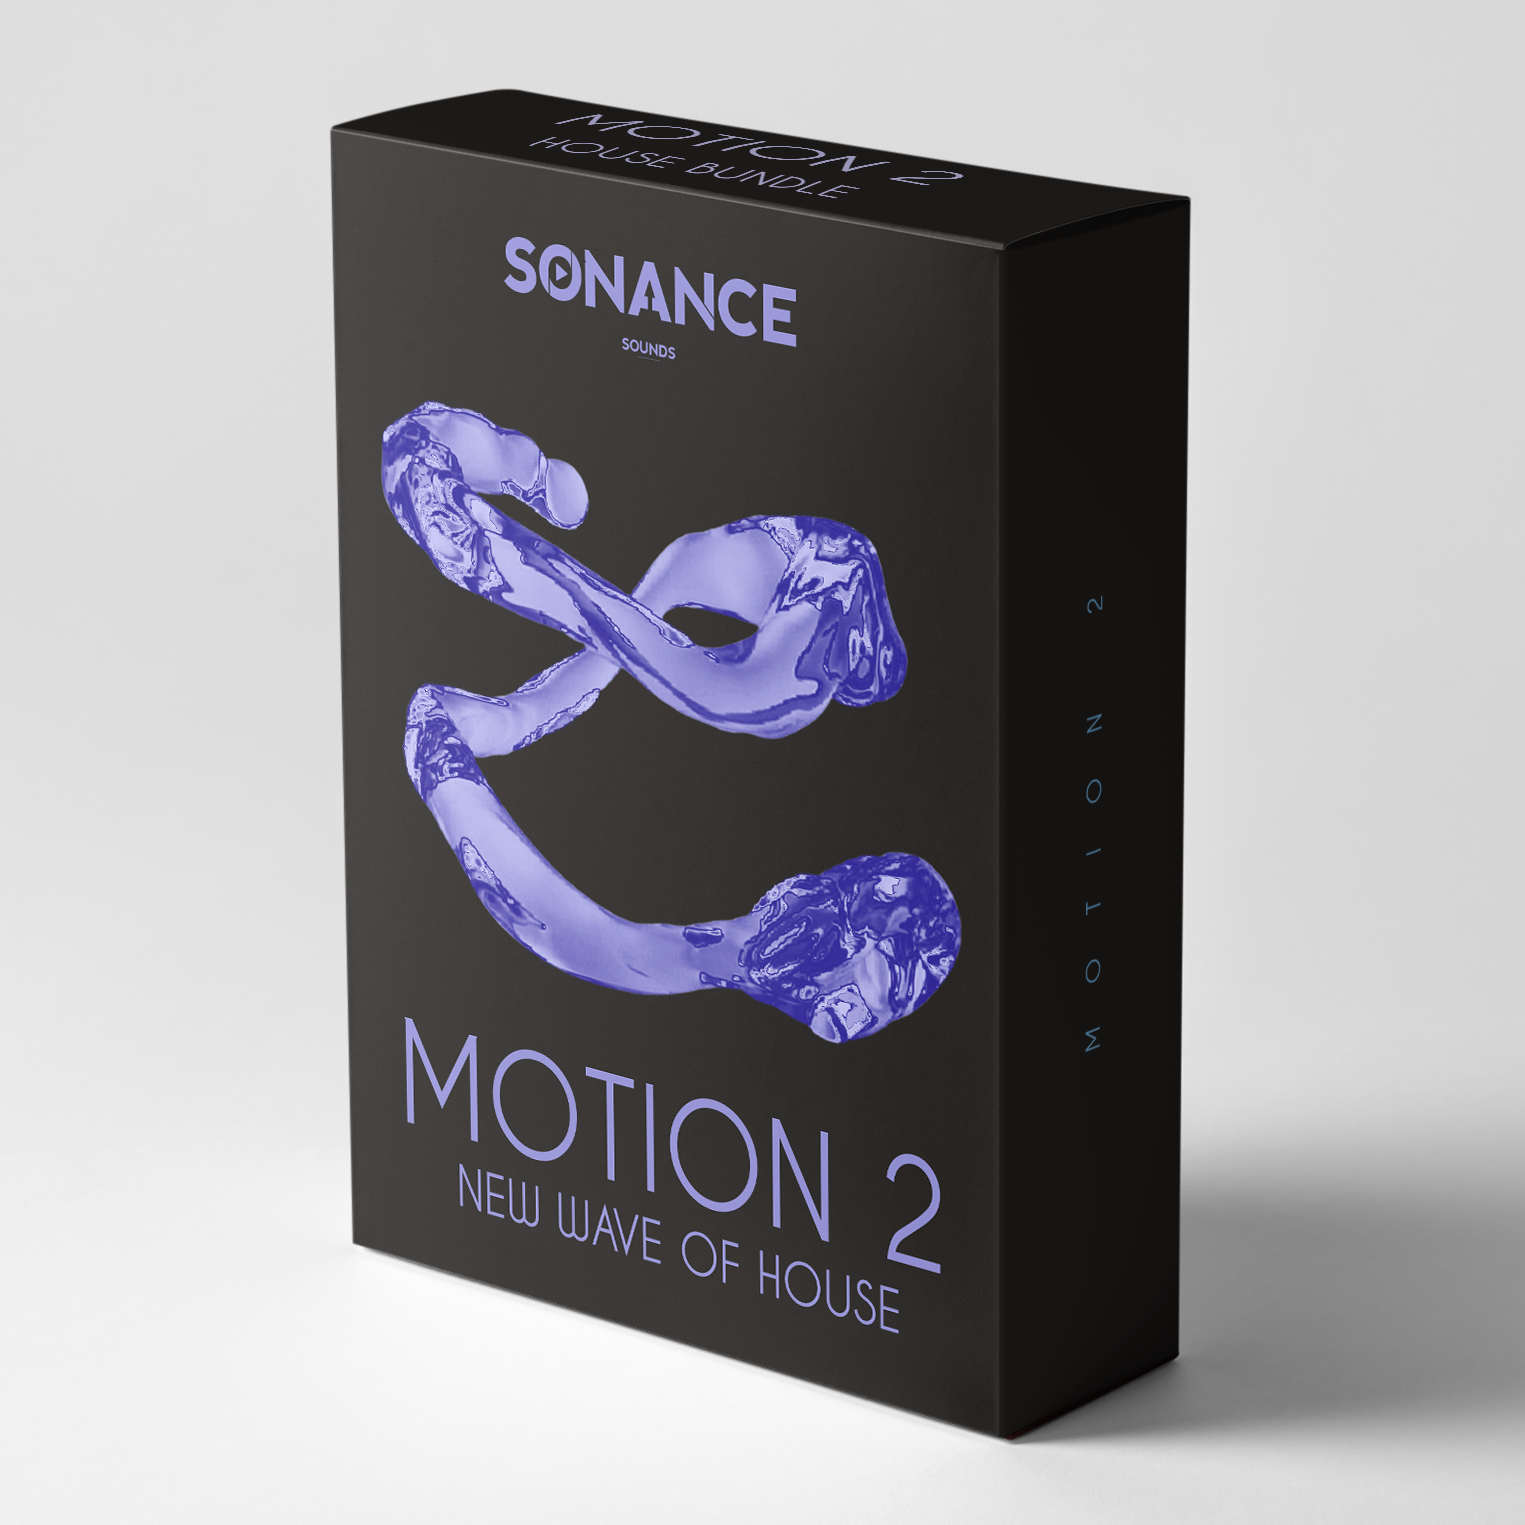 Sonance Sounds - Motion 2